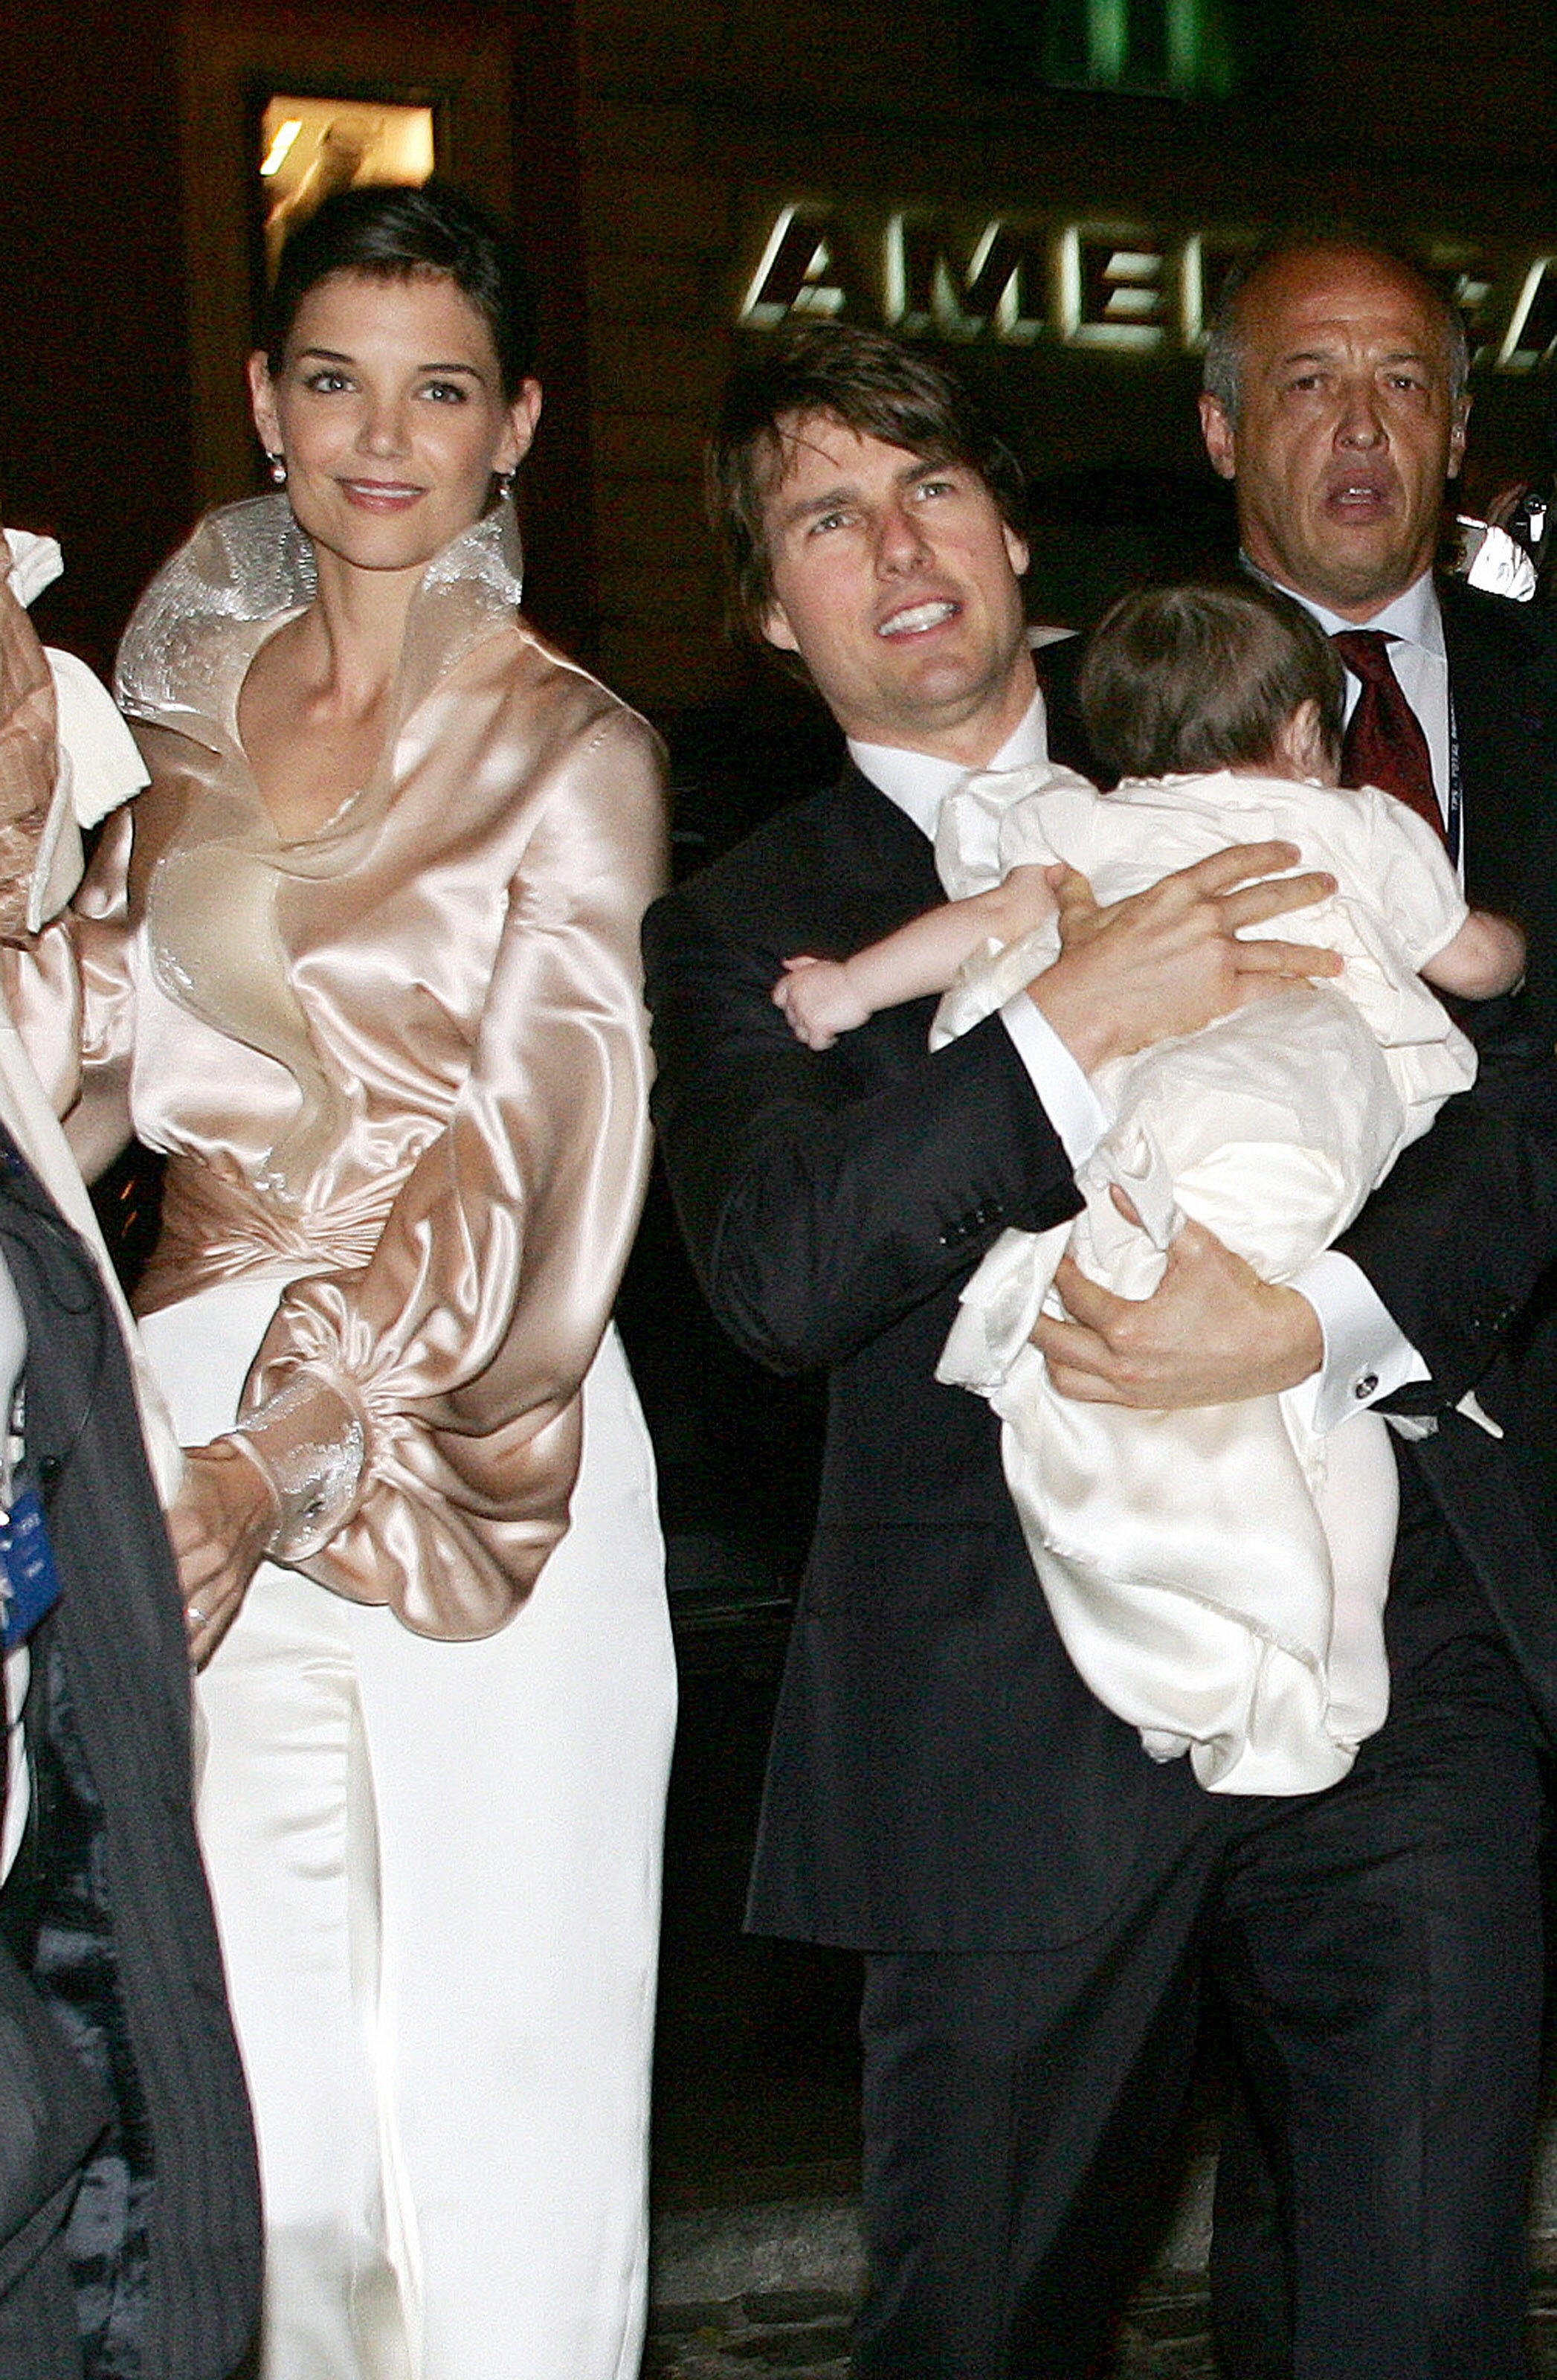 Tom Cruise, Katie Holmes et Suri Cruise dans le centre de Rome, le 16 novembre 2006 | Source : Getty Images